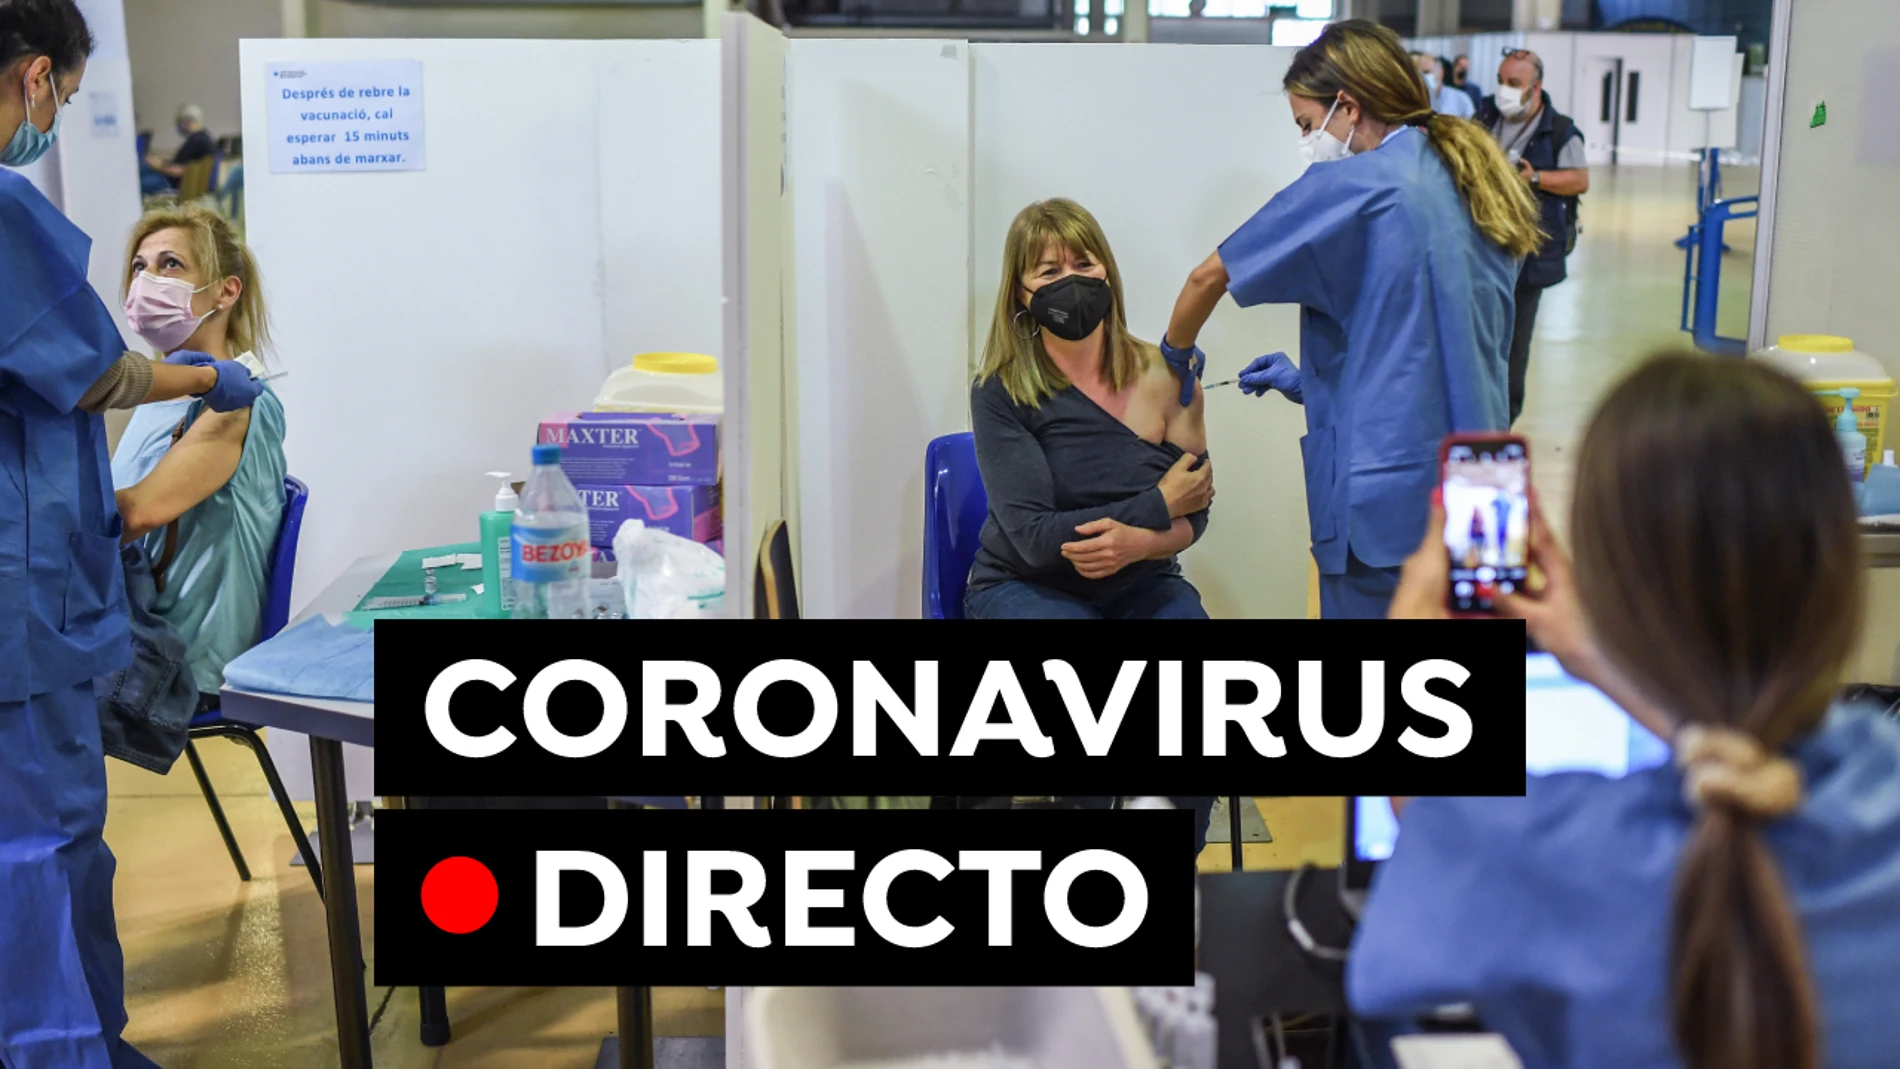 Coronavirus en España hoy: Zonas confinadas en Madrid, restricciones y vacuna contra el COVID-19, en directo